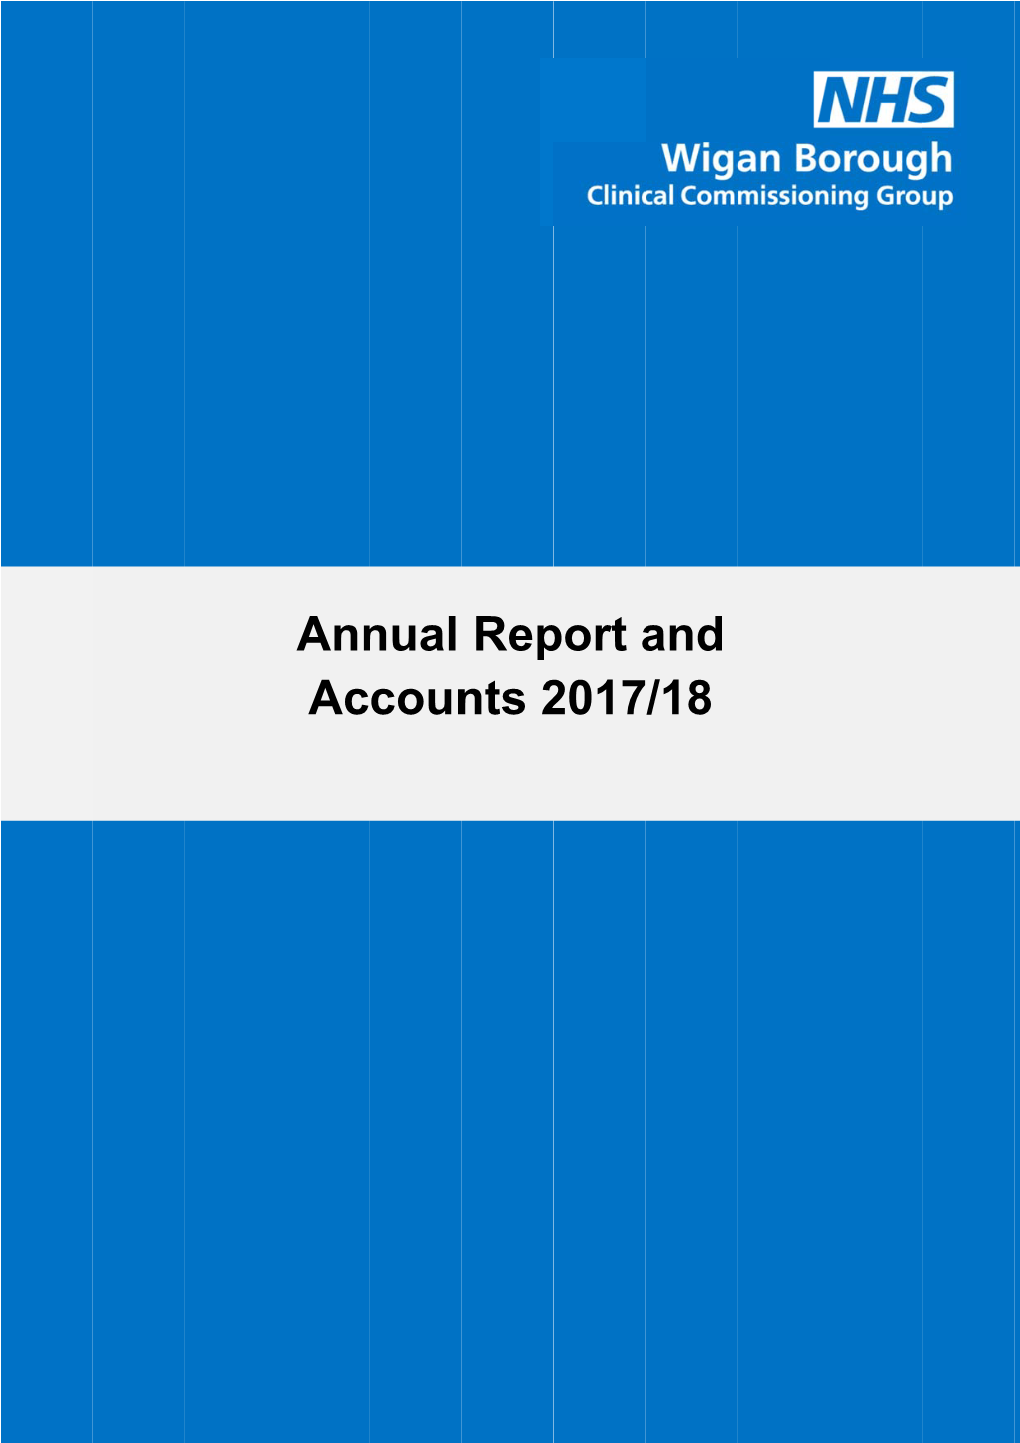 Wigan Borough CCG Annual Report & Accounts 2017-2018